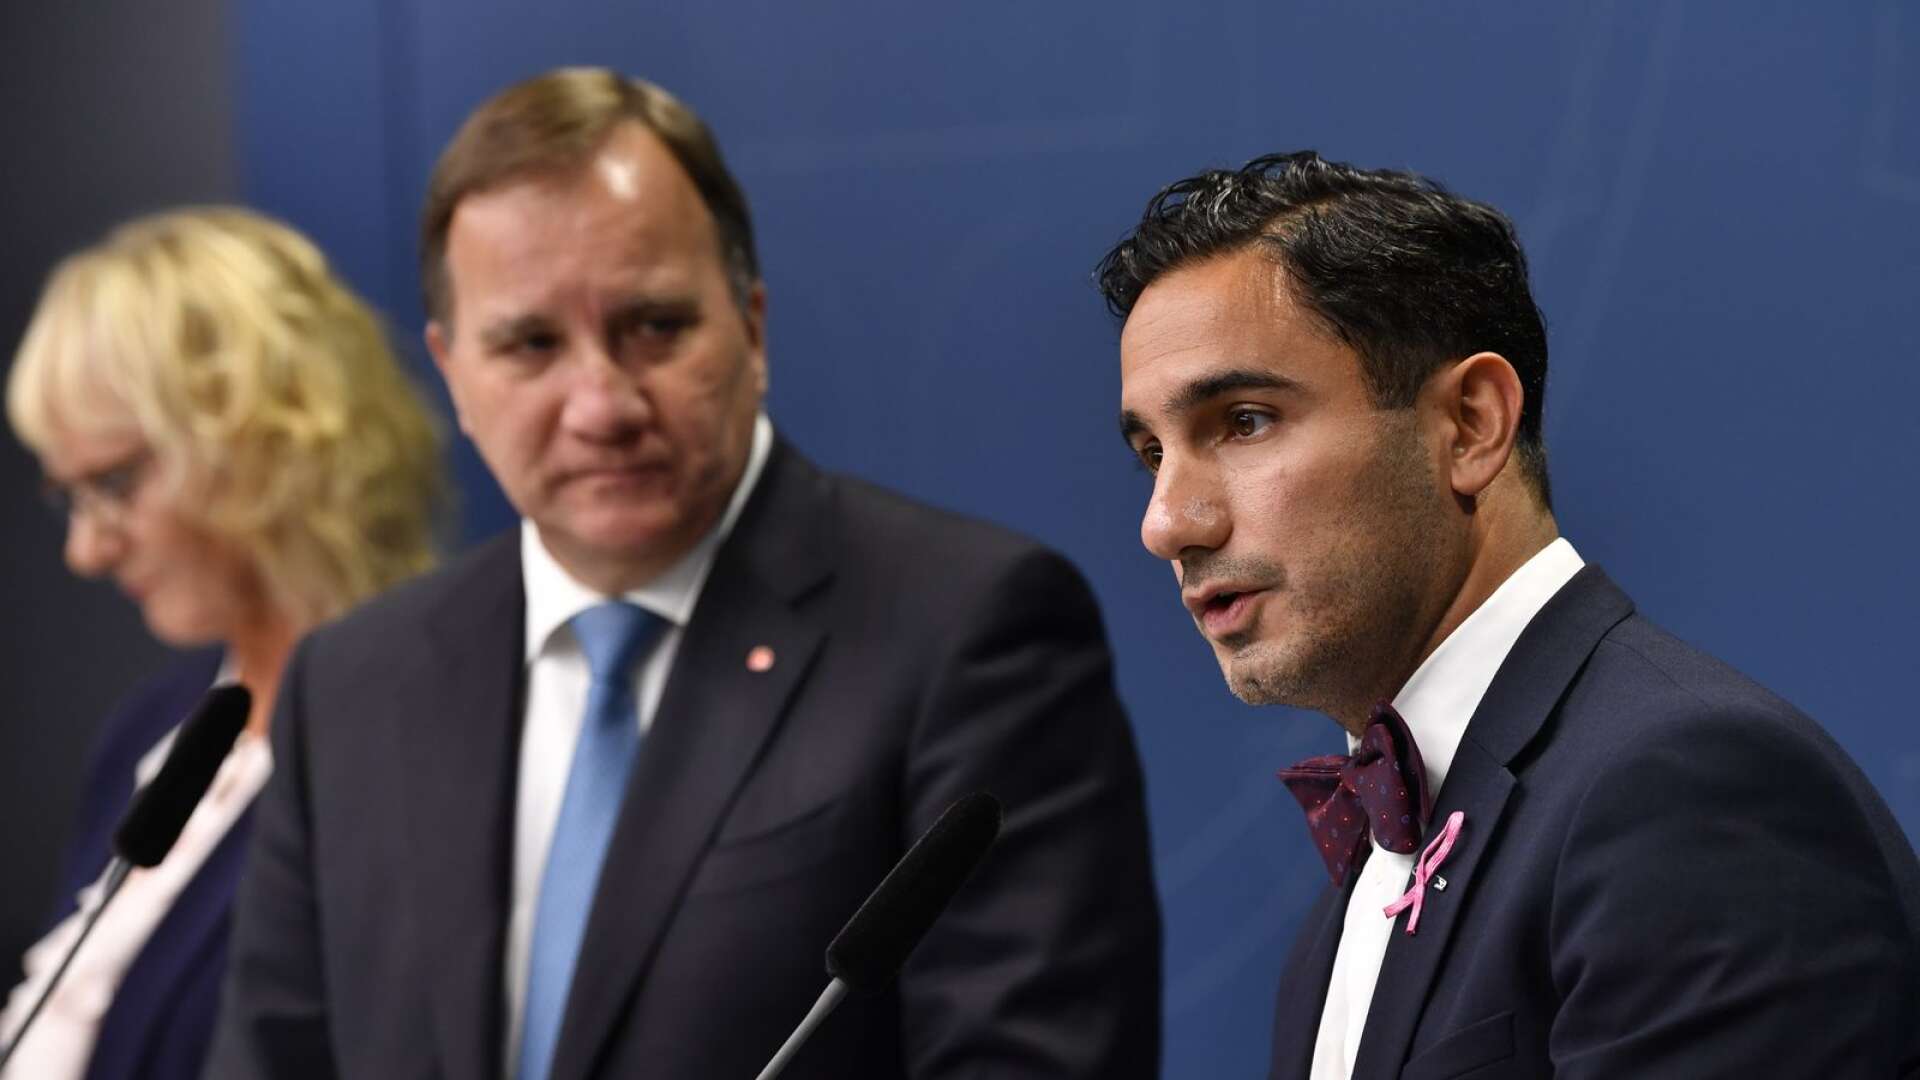 Stefan Löfven presenterade Ardalan Shekarabi som ny socialförsäkringsminister vid en presskonferens på tisdagen.